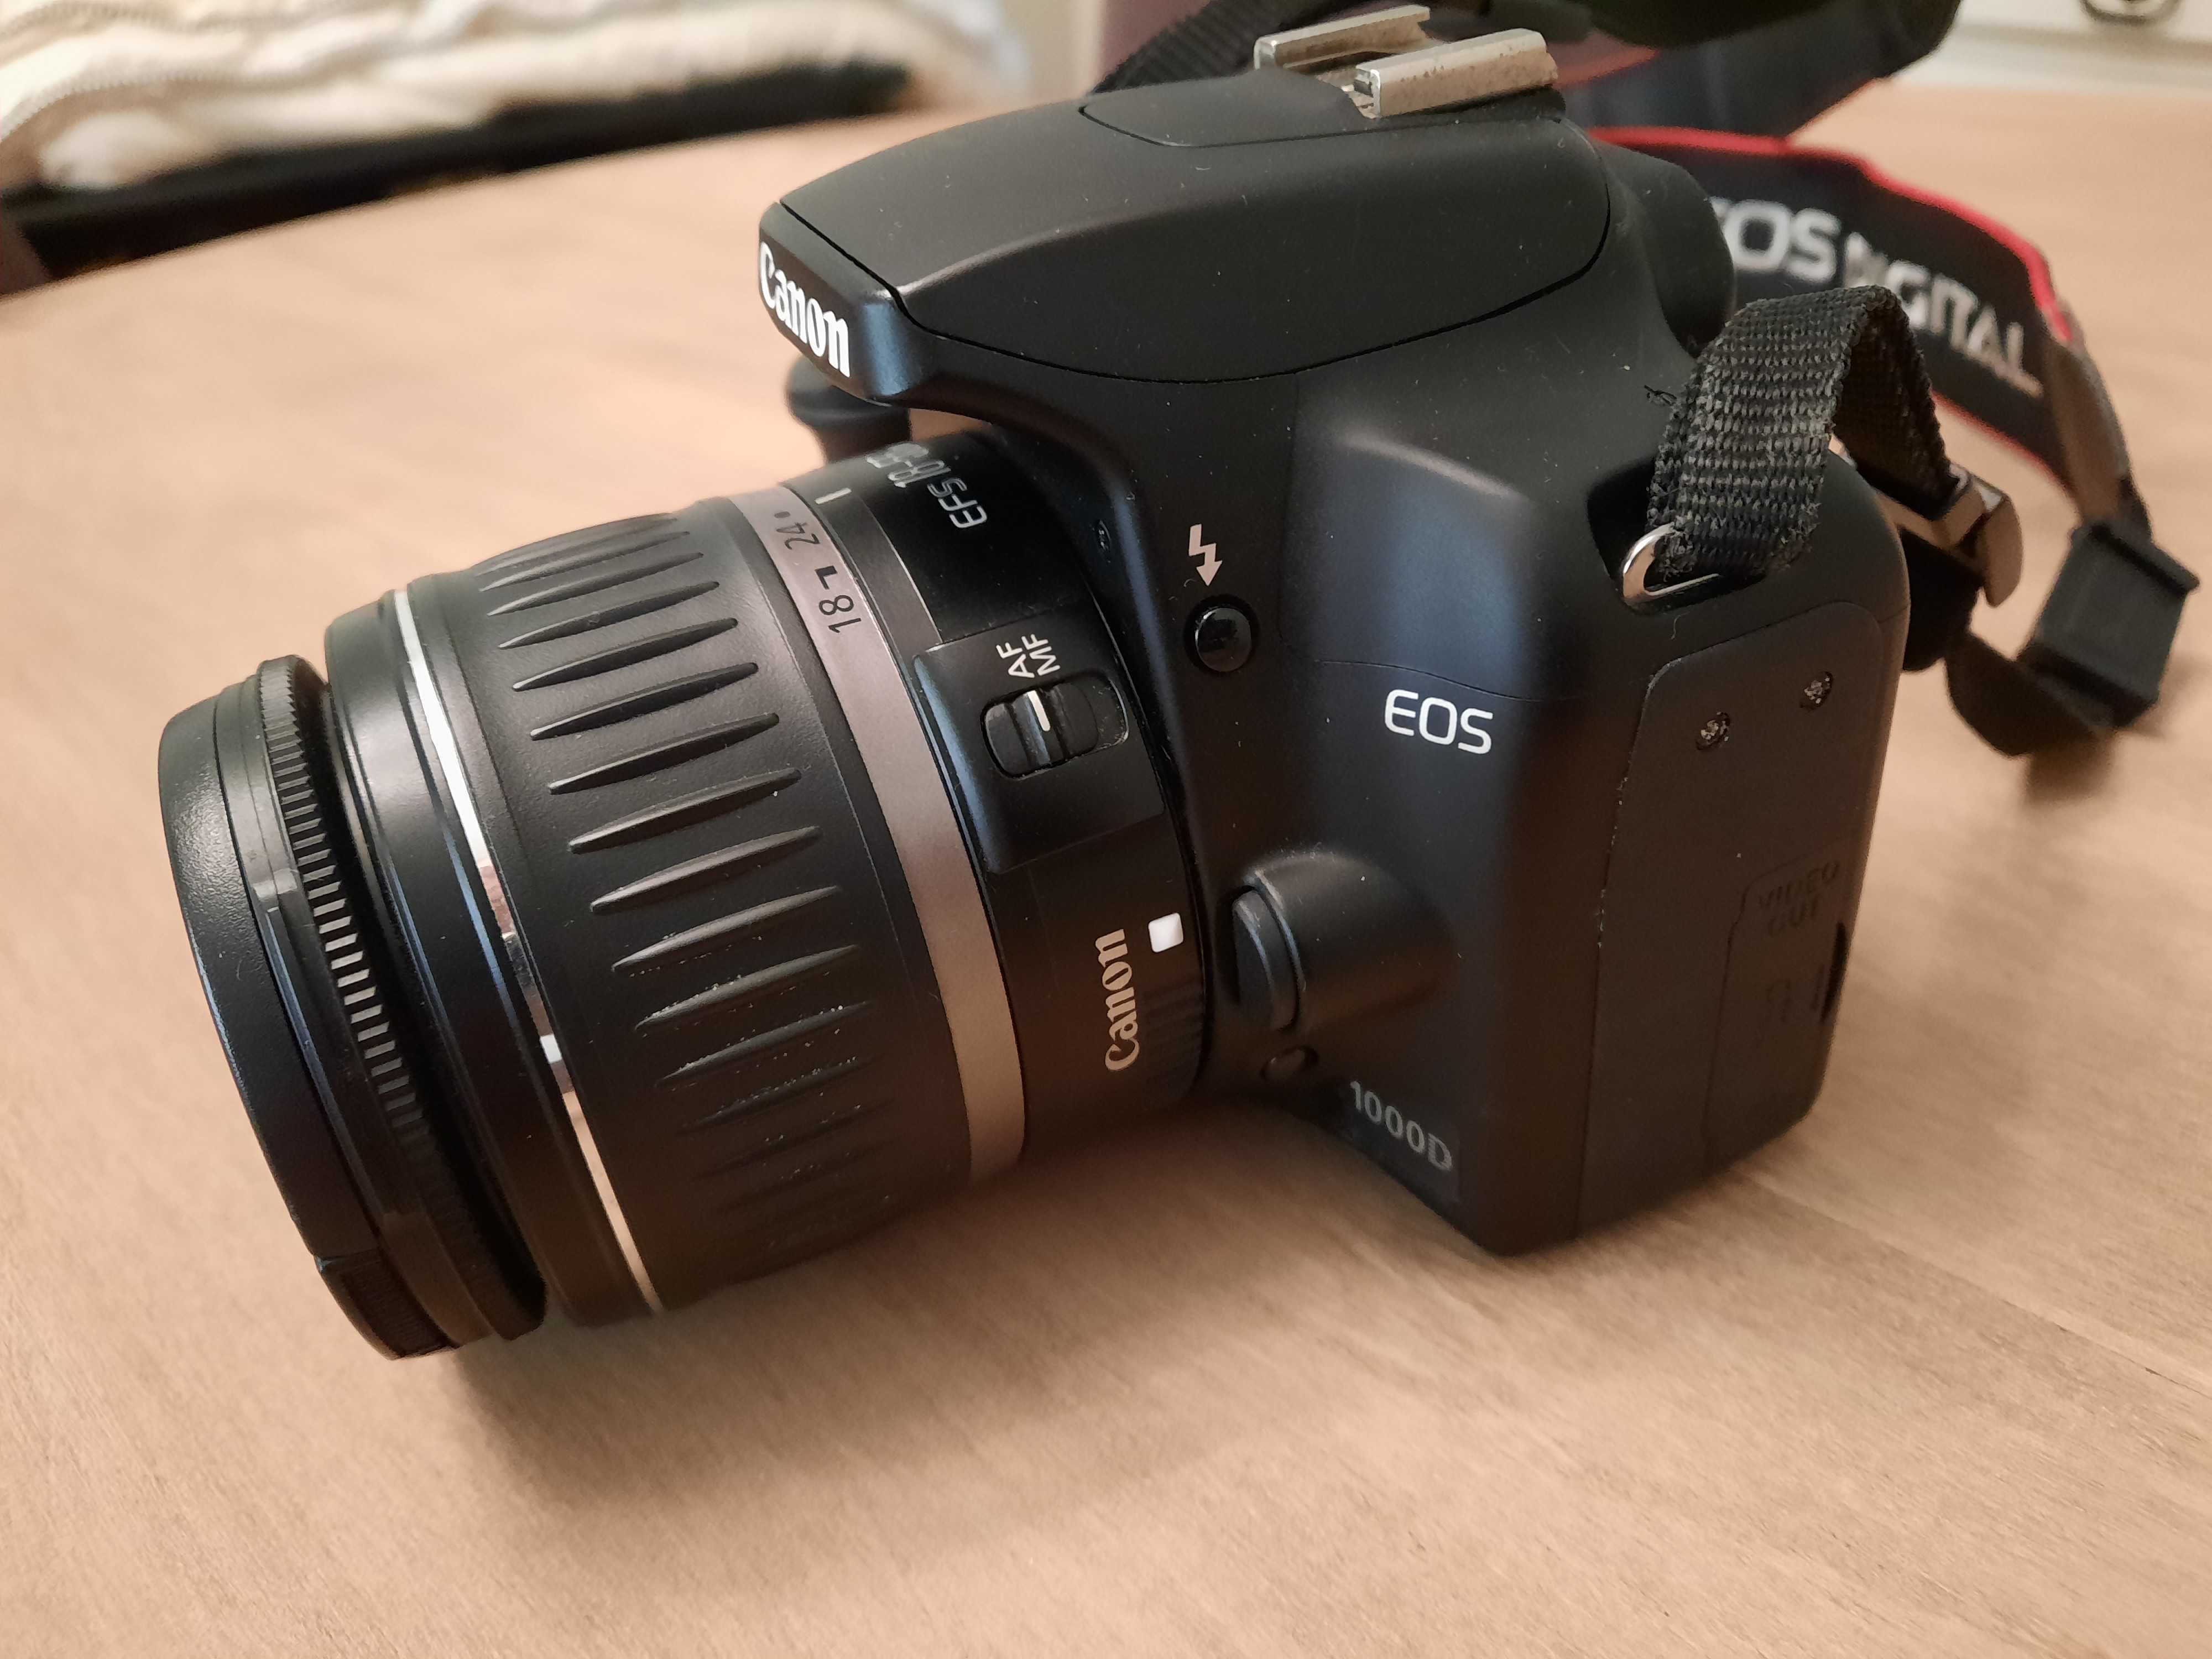 Canon Máquina Fotográfica EOS 1000D + Objectiva 18 - 55